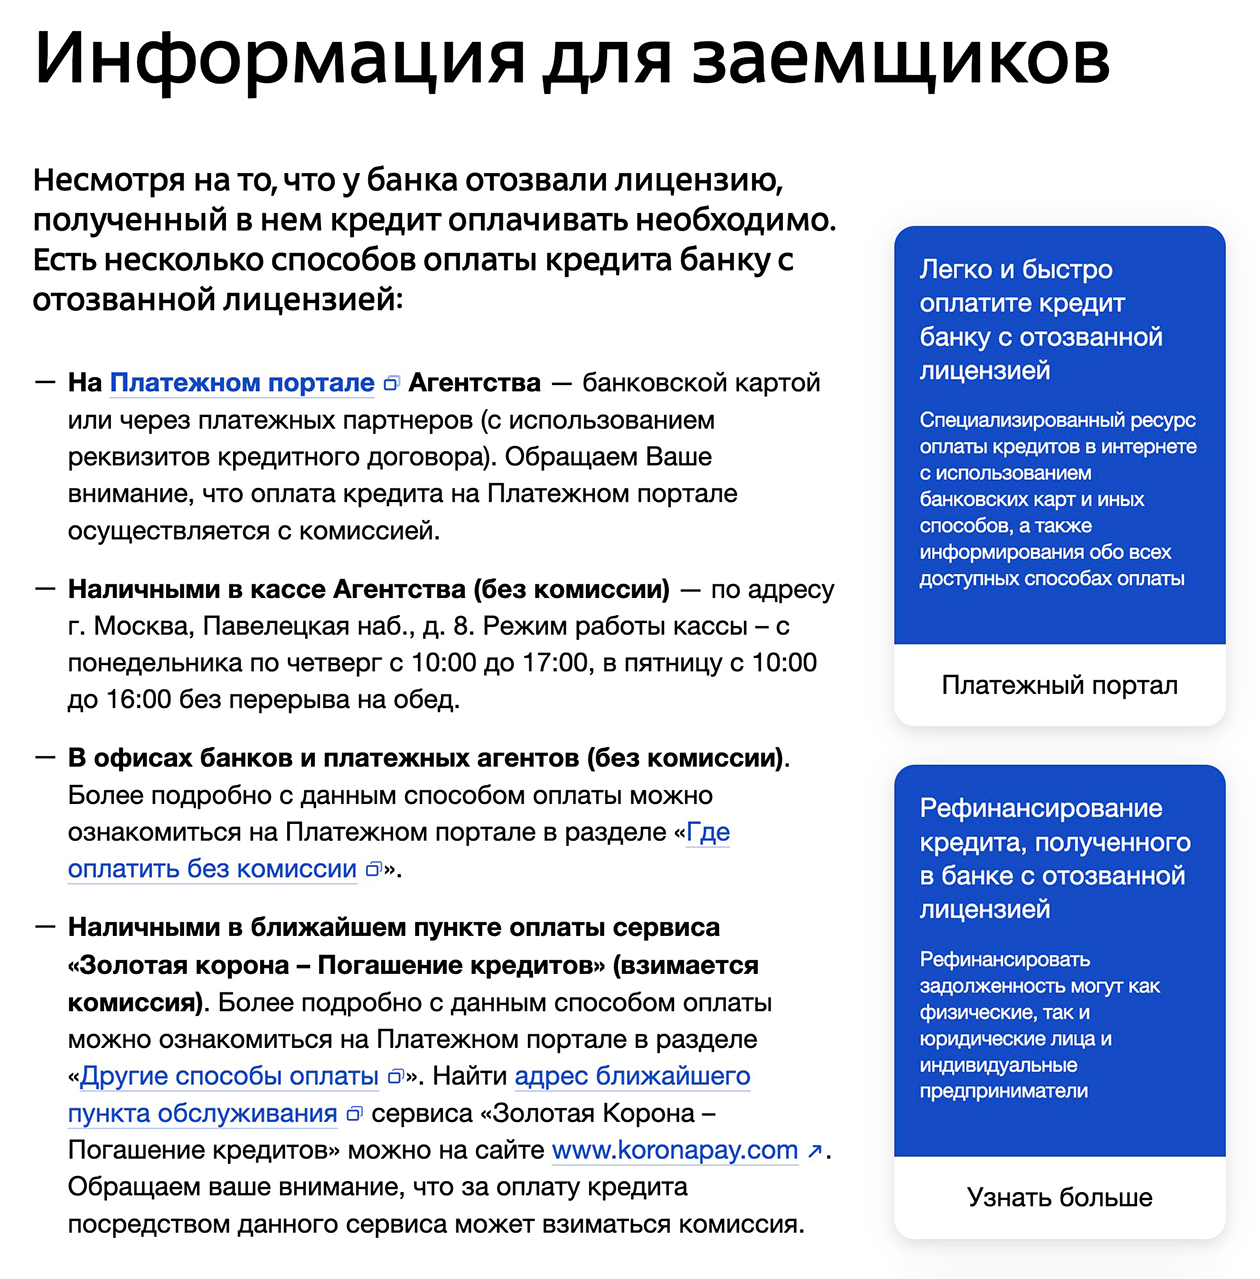 На сайте АСВ в разделе каждого банка, ликвидацию которого проводят, агентство указывает доступные способы выплаты займов. Источник: asv.org.ru